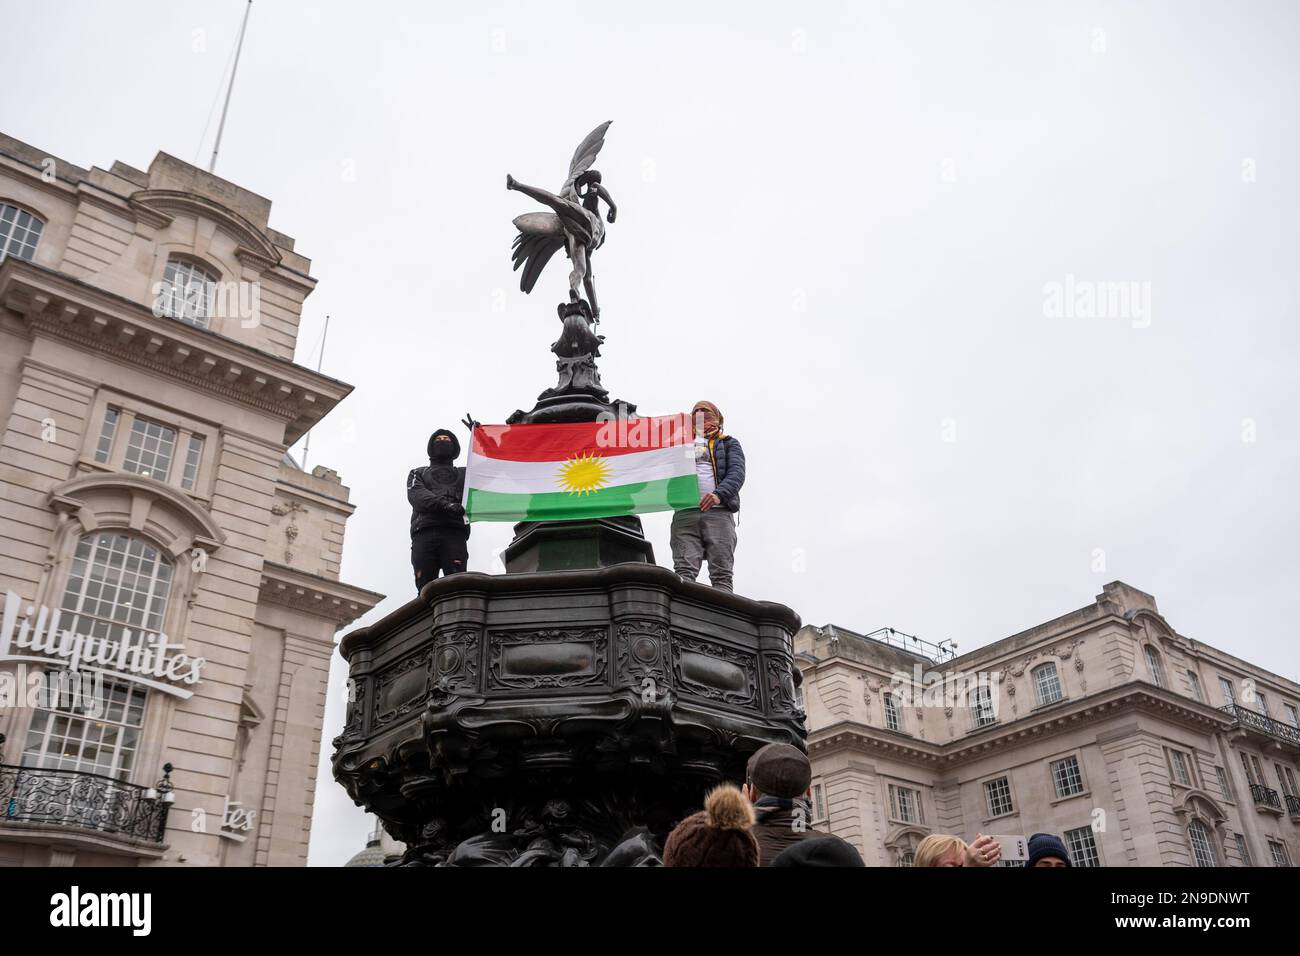 Des milliers de personnes se sont rassemblées sur Trafalgar Square pour montrer leur unité face à l'anniversaire de 44th du régime dictatorial en Iran. Londres/Royaume-Uni Banque D'Images